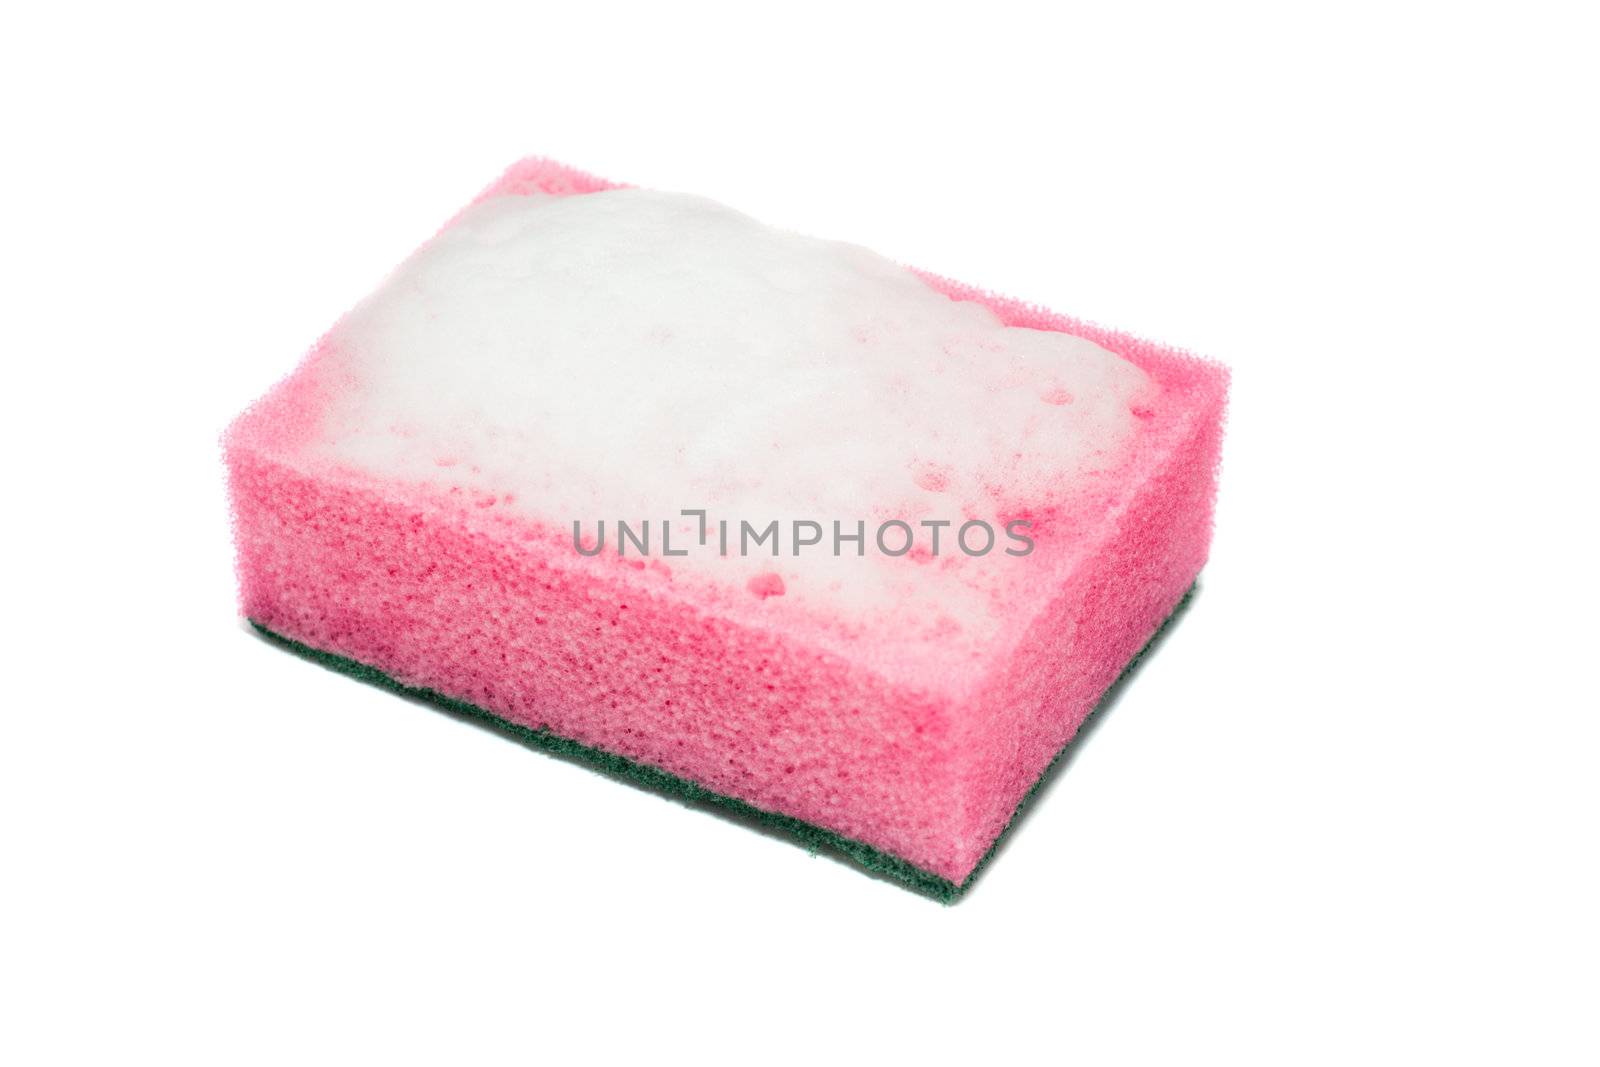 sponge with foam by Alekcey